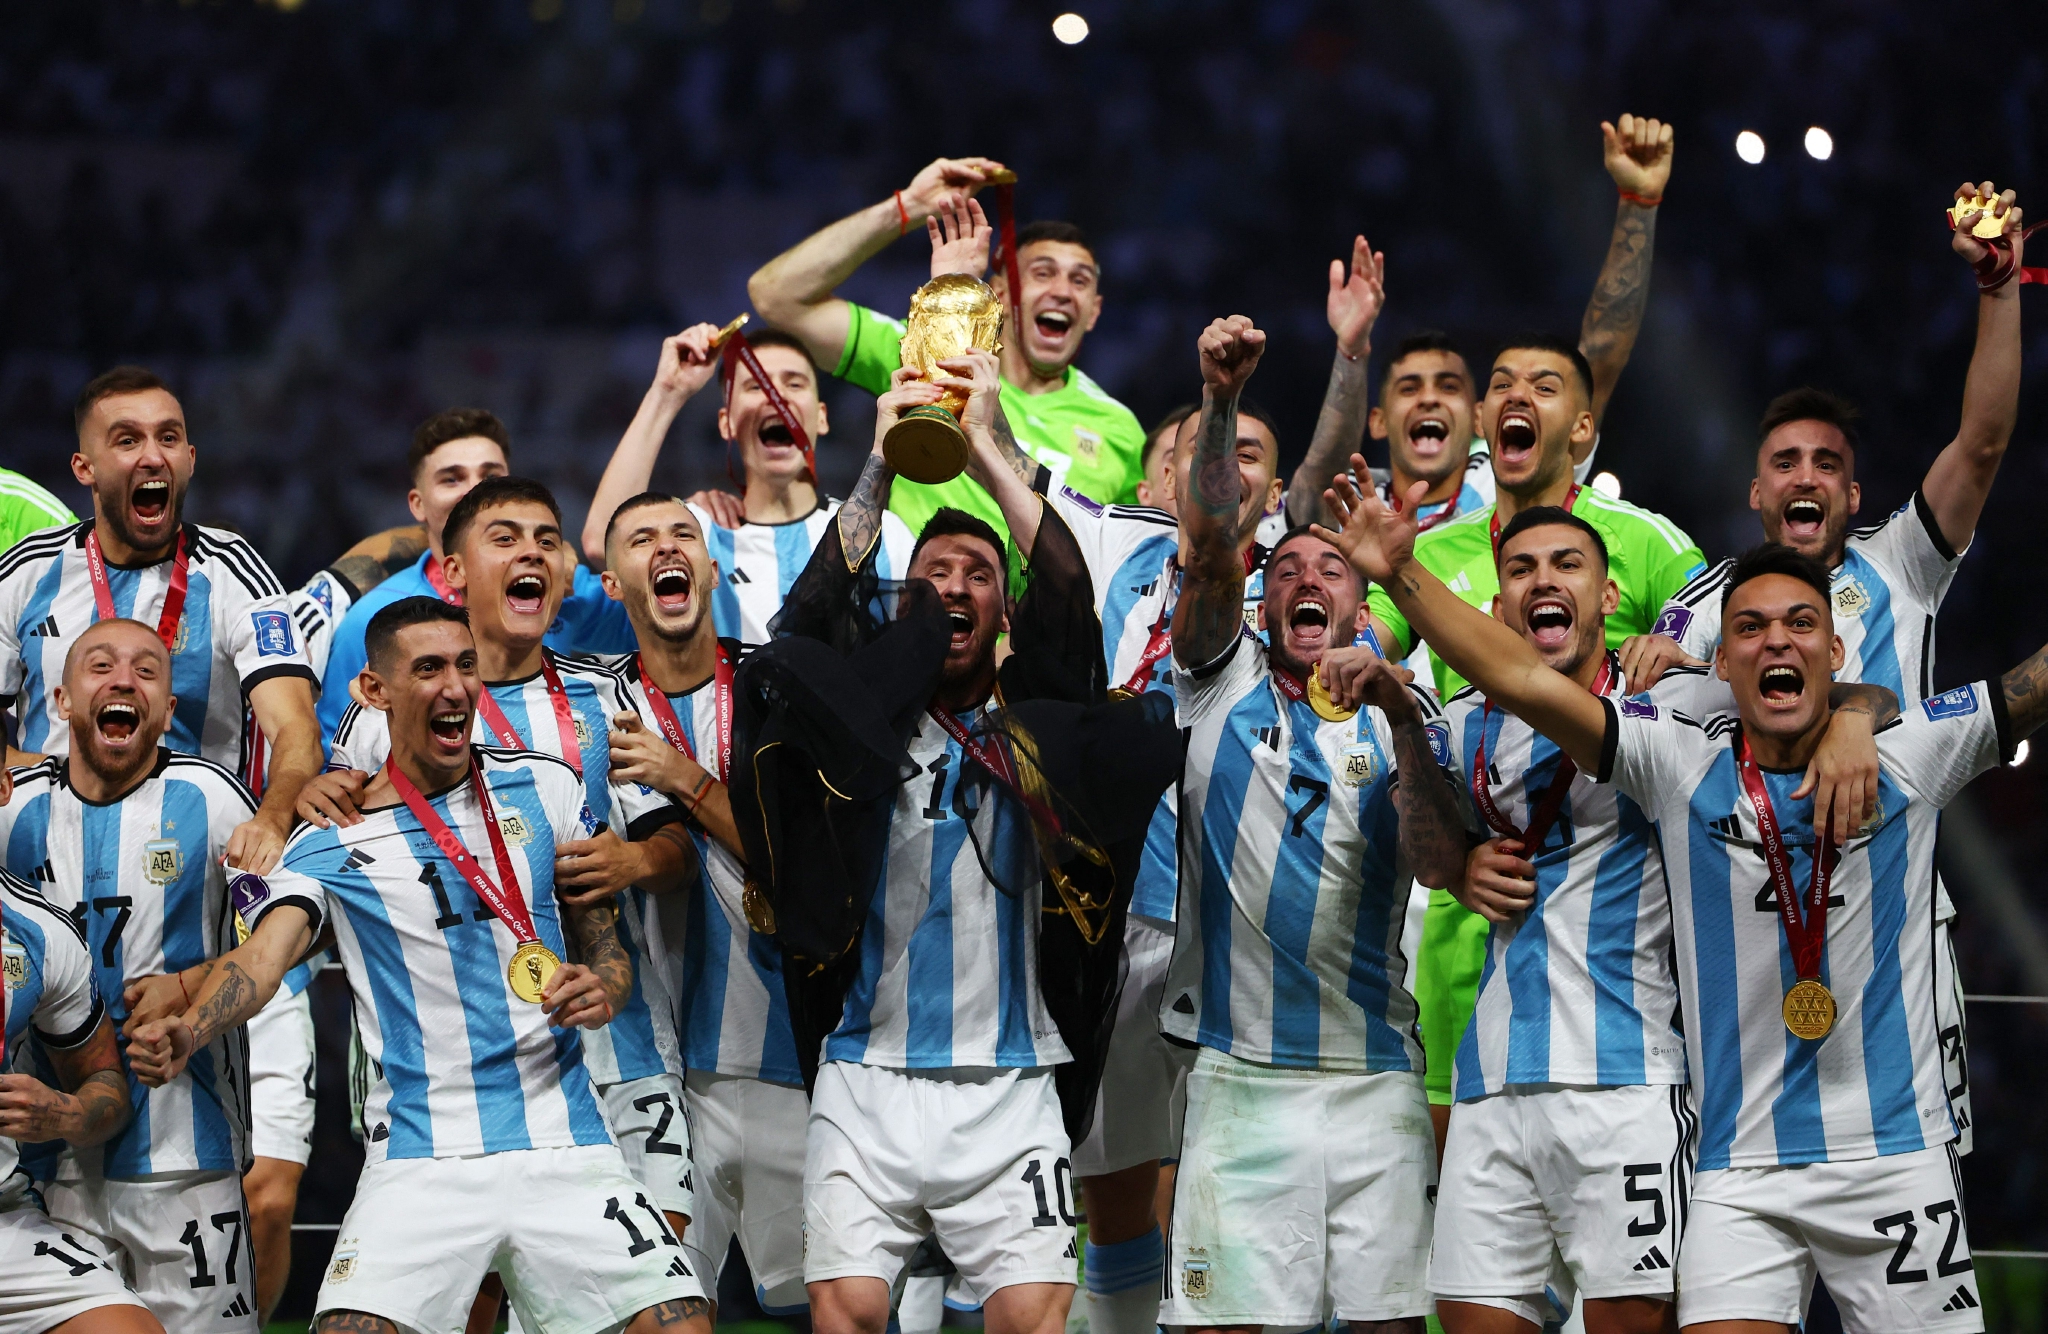 夺笋！法国人请愿重赛，阿根廷媒体重新播放了一次决赛